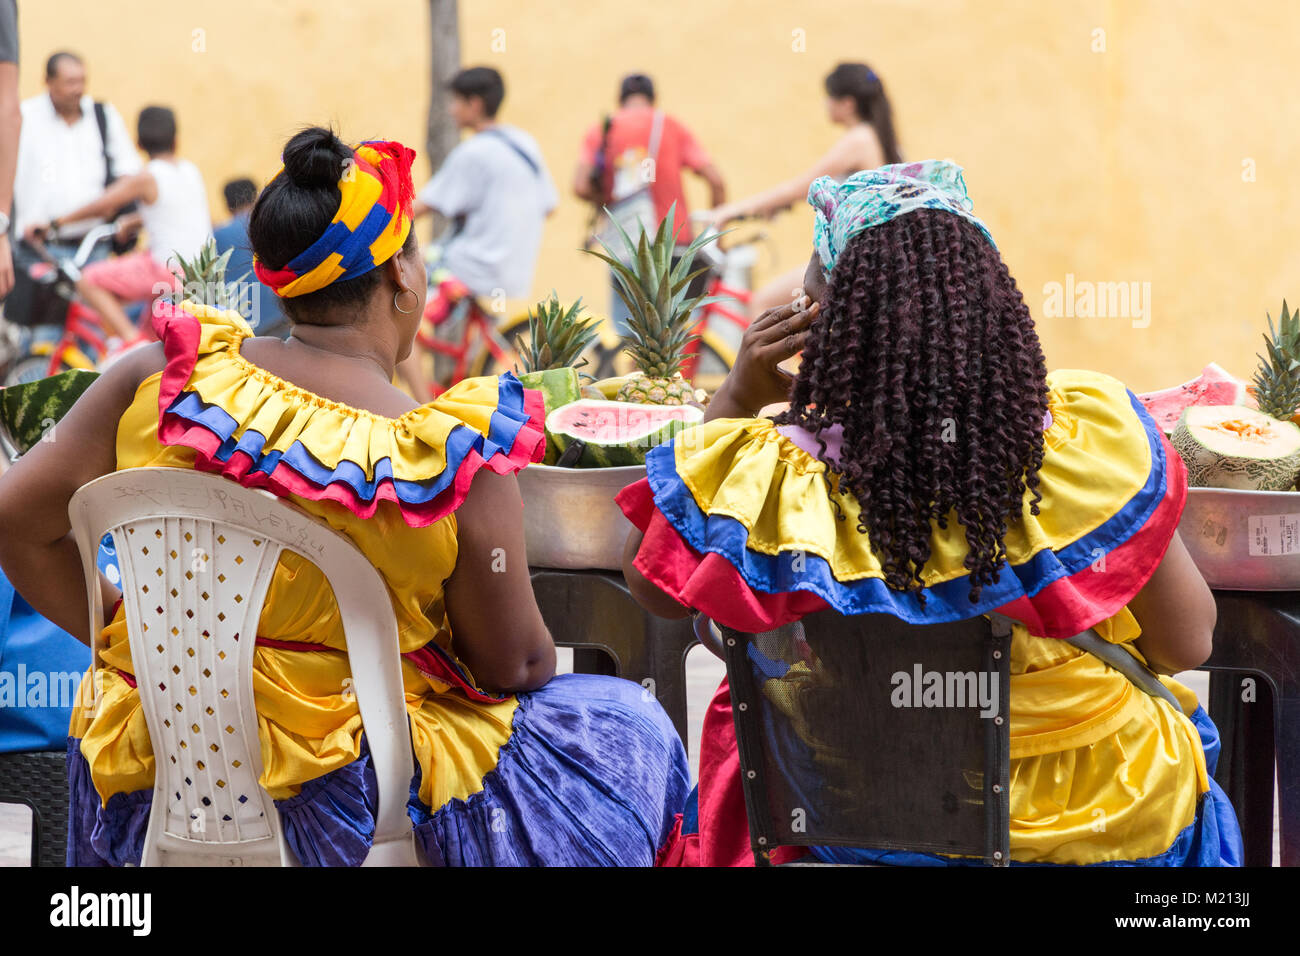 Cartagena, Colombie - Janvier 23th, 2018 : vue arrière de deux palenqueras vente de fruits frais tropicaux assis à la Plaza de San Pedro Claver en attente de cli Banque D'Images